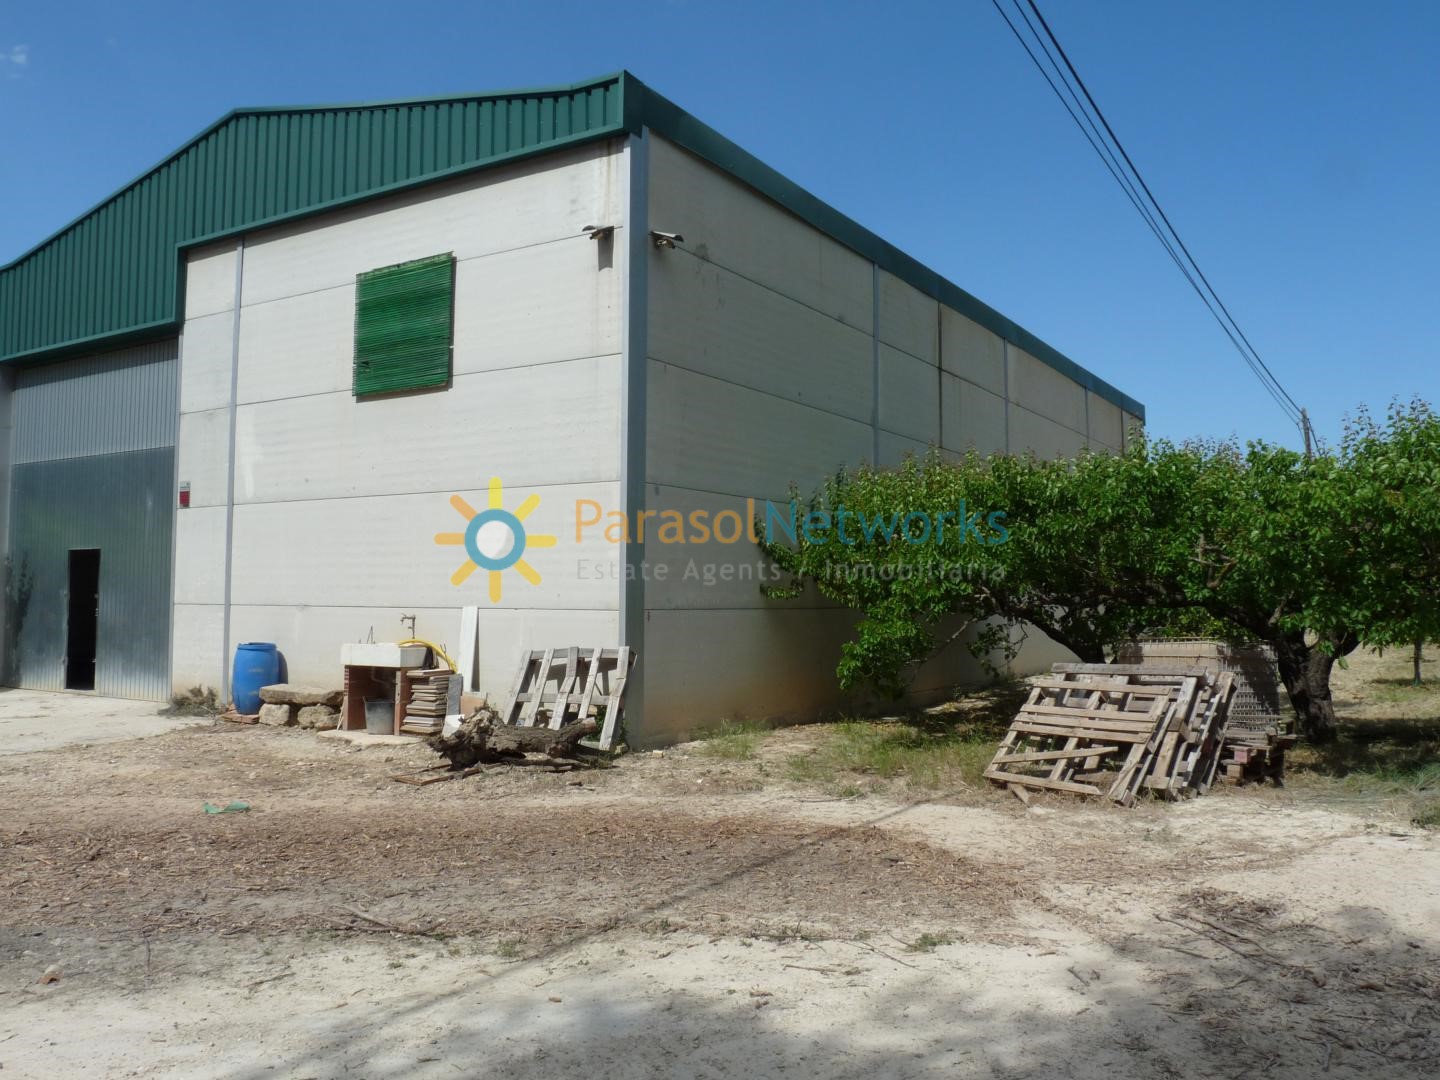 Terrain à vendre à Adzeneta de Albaida – Ref: 221